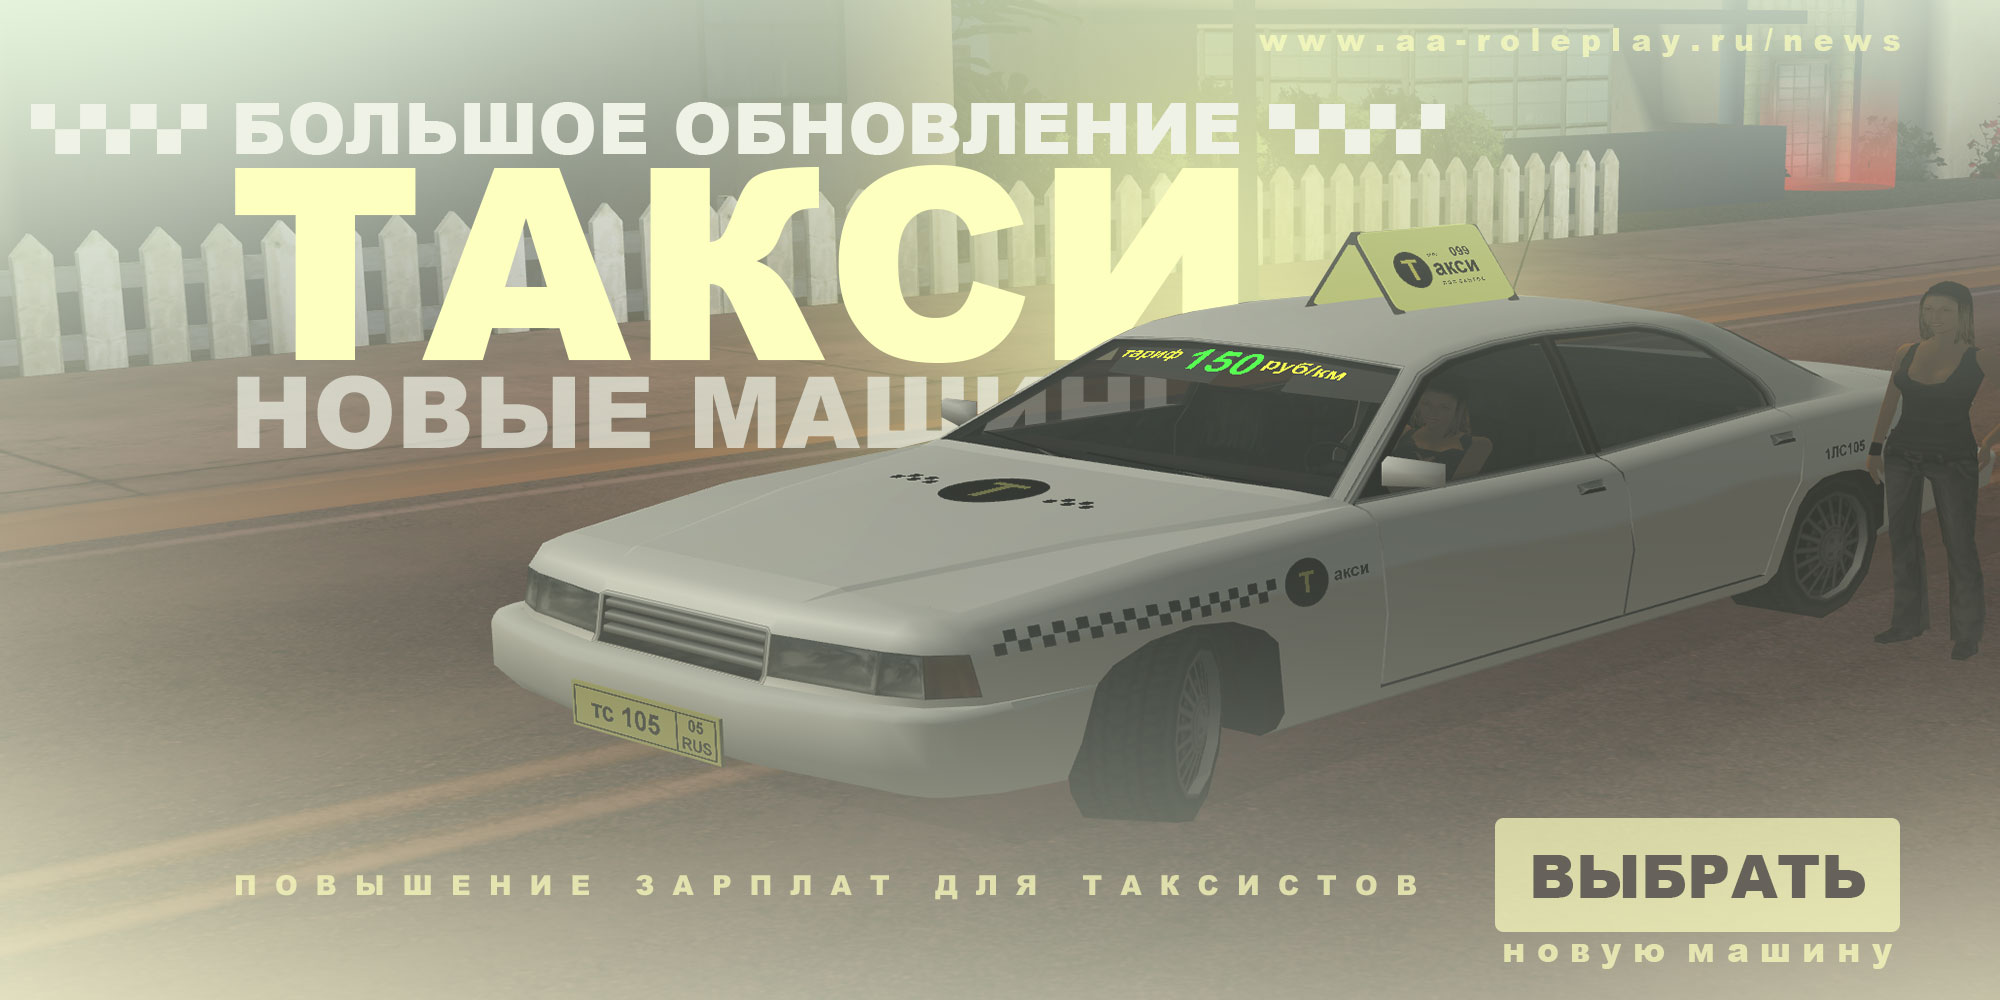 Постер большого обновления - Новые машины такси (177.89 КБ) Просмотров: 2010